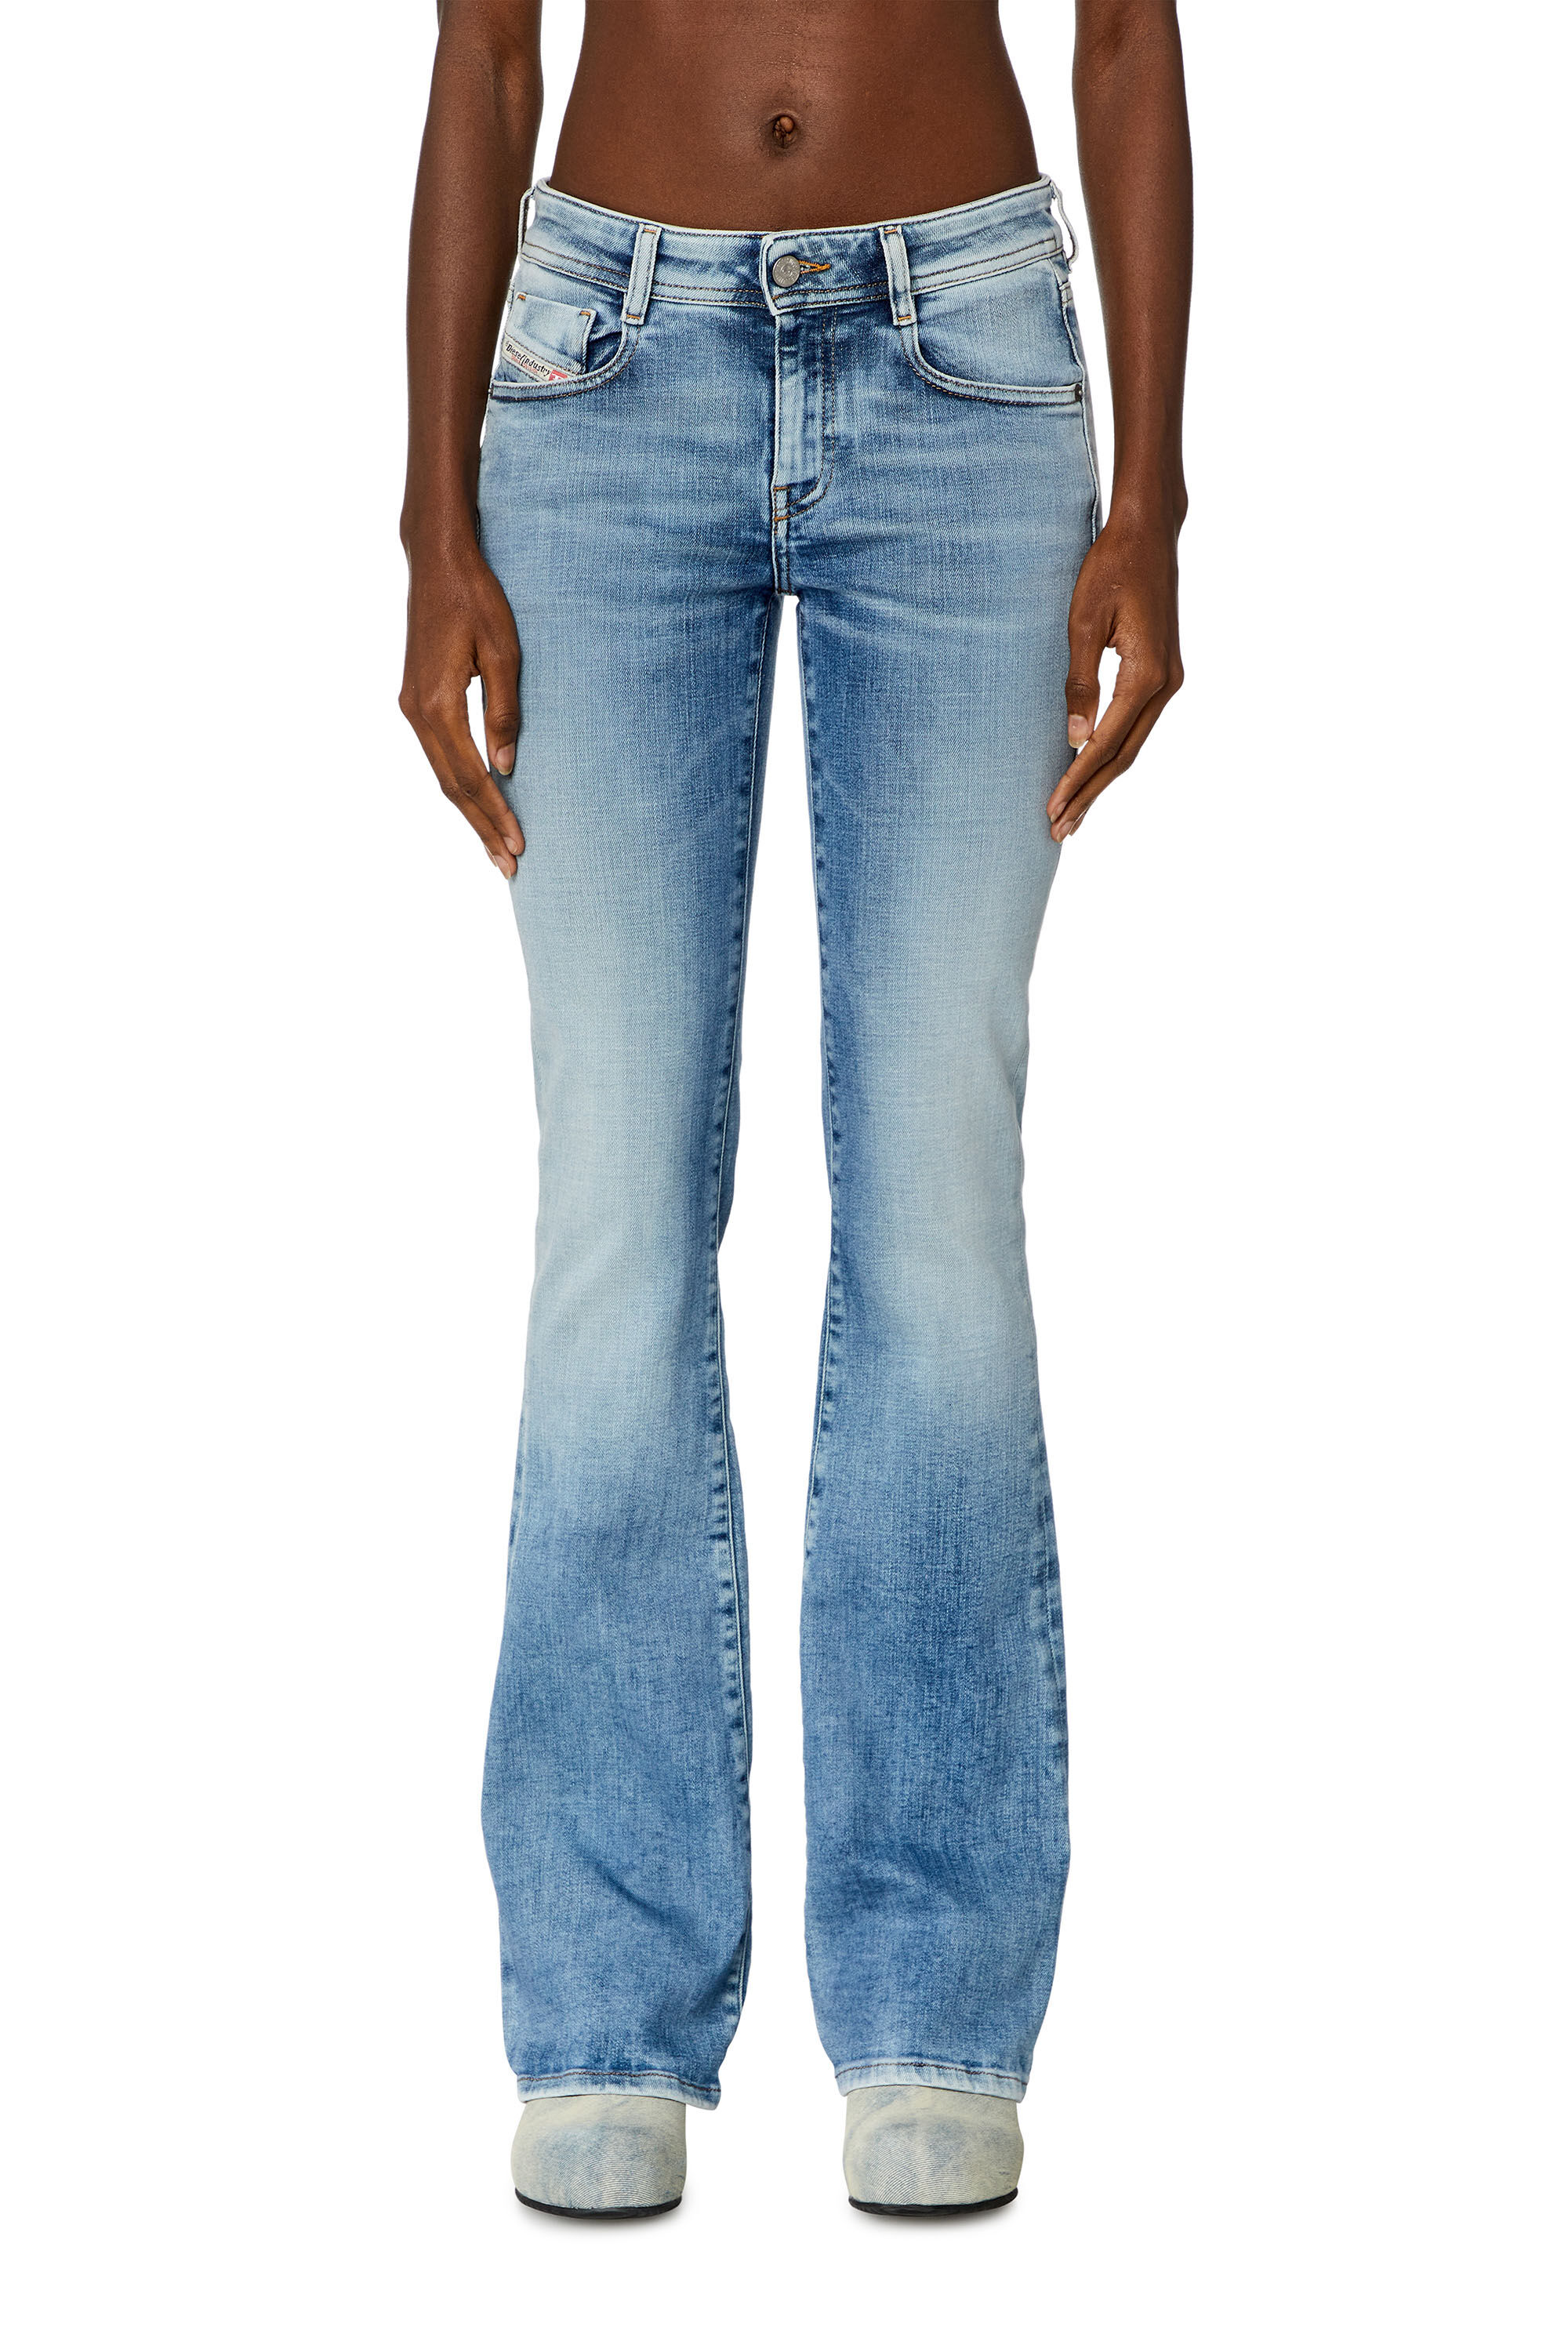 ブーツカットフレア Jeans - 1969 D-Ebbey | ライトブルー 